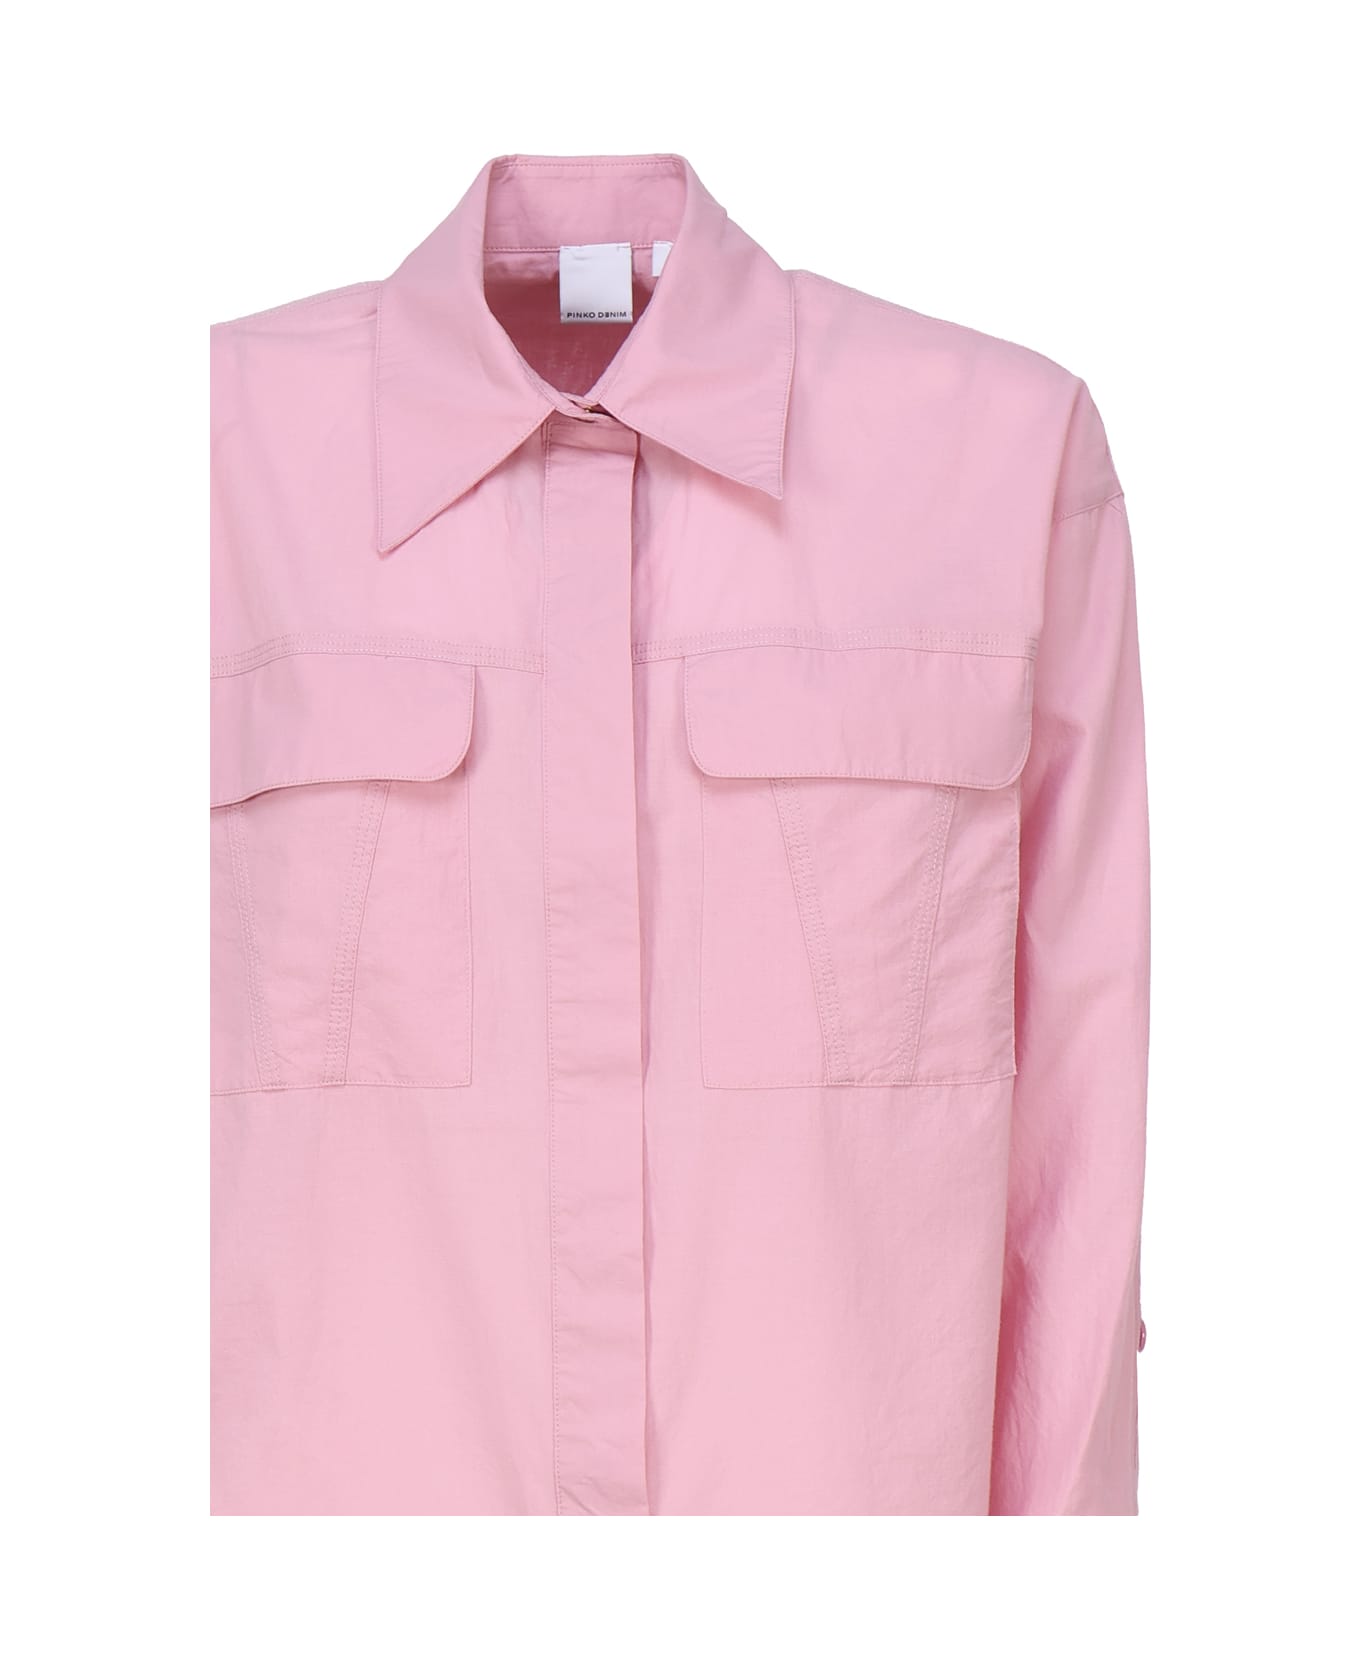 Pinko Cotton Shirt - Pink